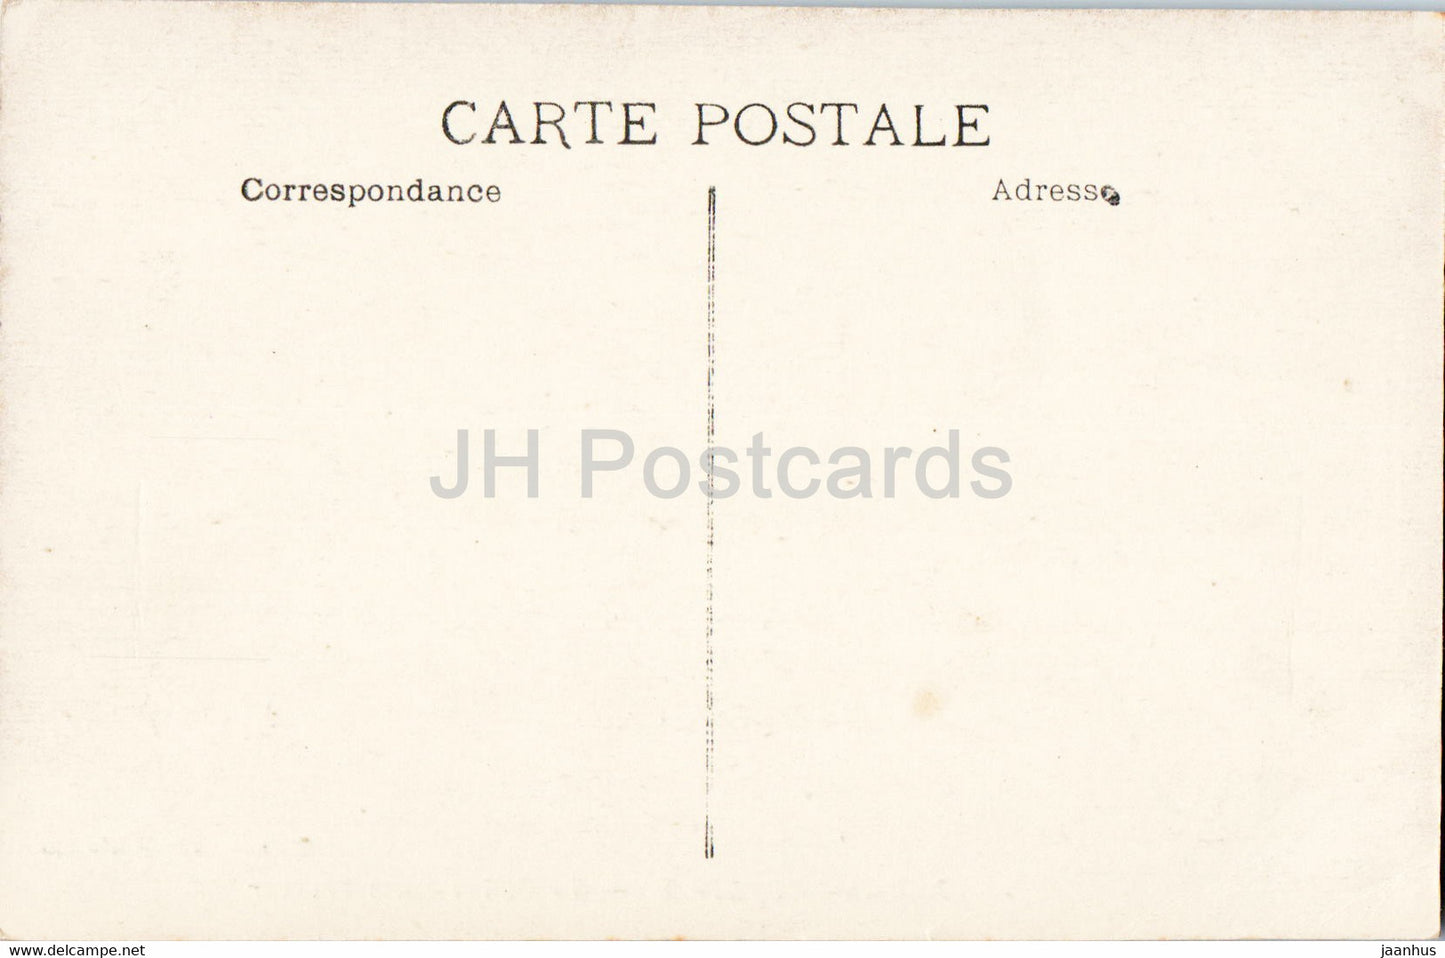 Aix en Provence - Le Cloître Saint Sauveur - cloître - carte postale ancienne - France - inutilisée